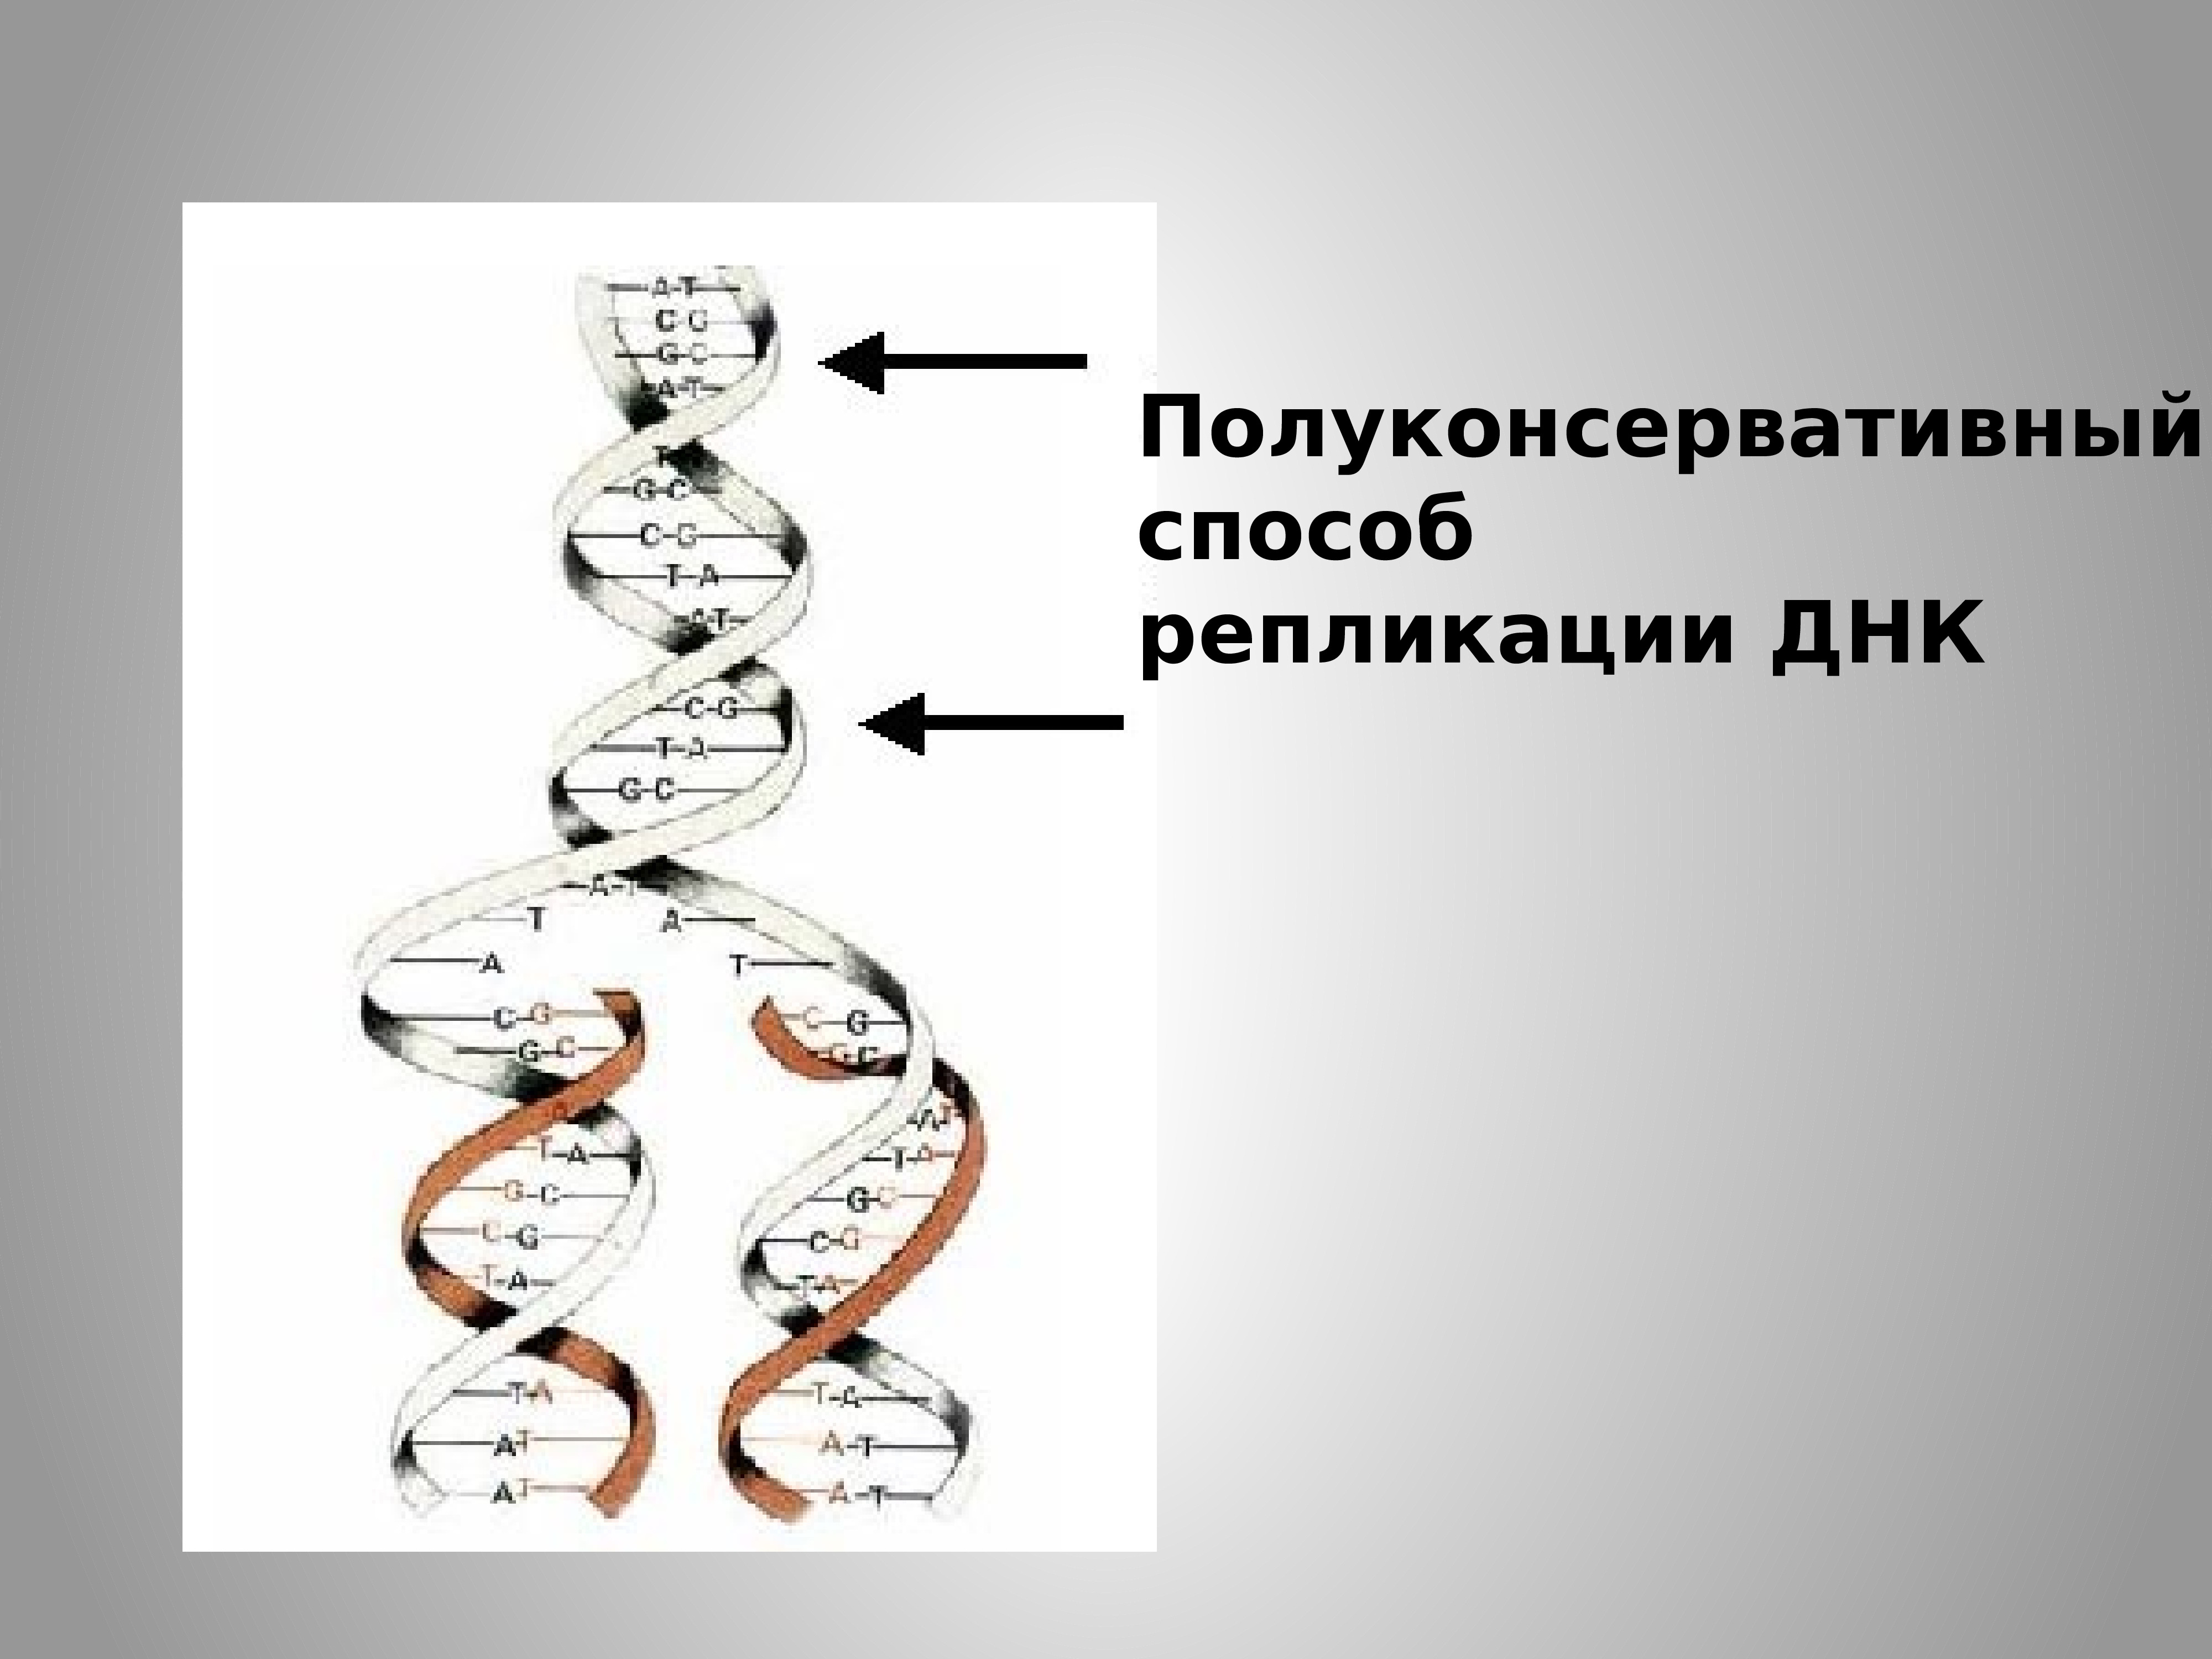 Репликация данных это. Схема полуконсервативной репликации ДНК. Полуконсервативный метод репликации ДНК. Репликация ДНК полуконсервативный механизм репликации ДНК. Полуконсервативная репликация ДНК. Механизм репликации.